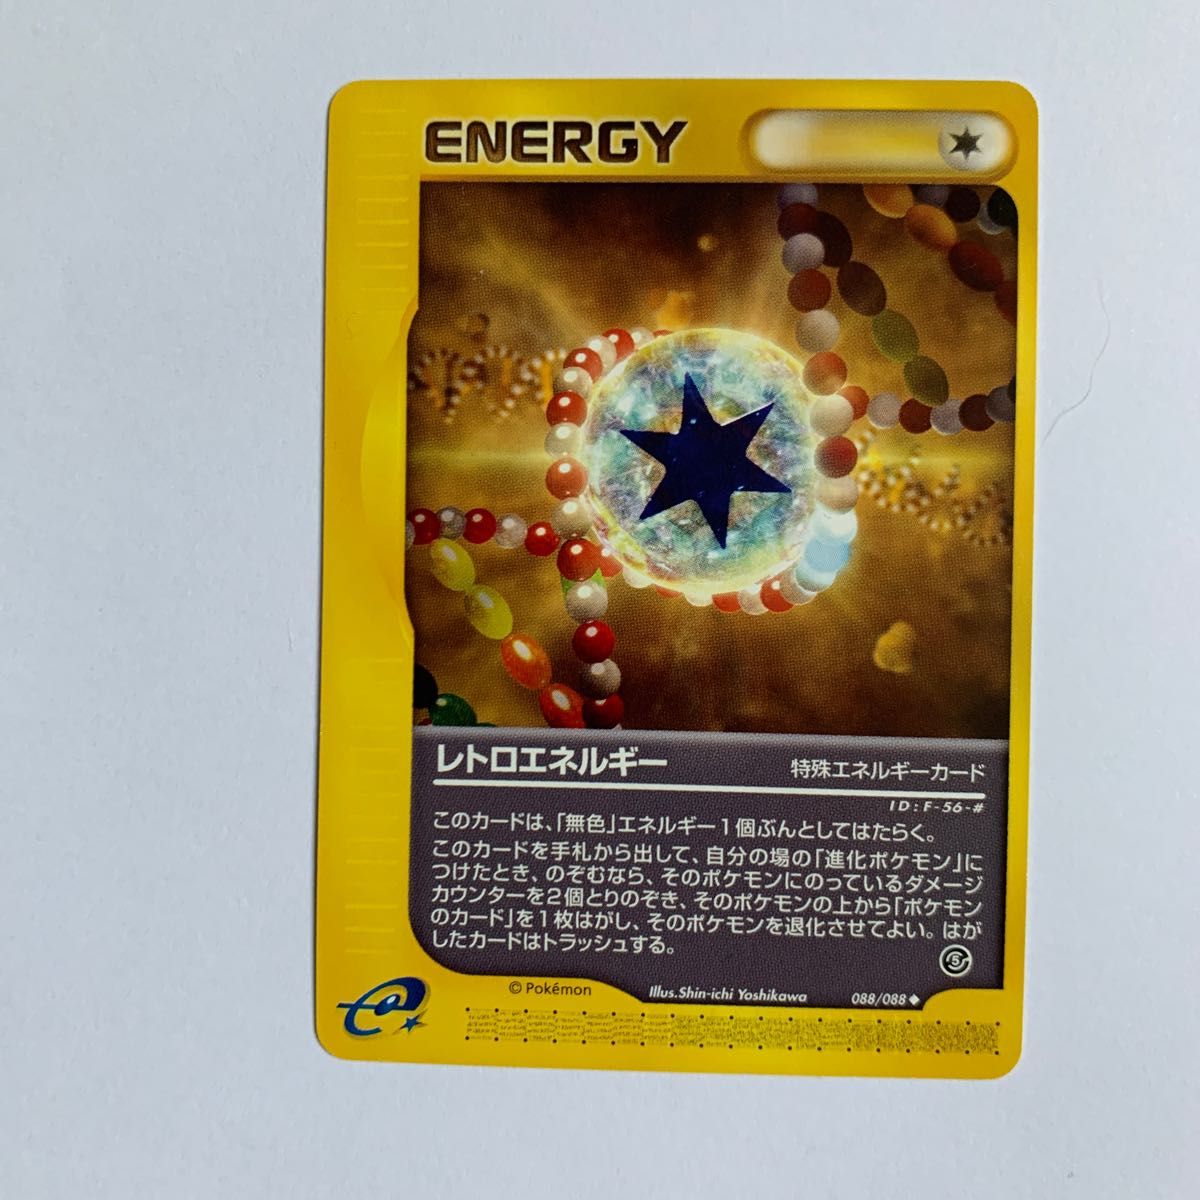 ポケモンカードe バンギラス 旧カード 付録エネルギーeカード 即購入